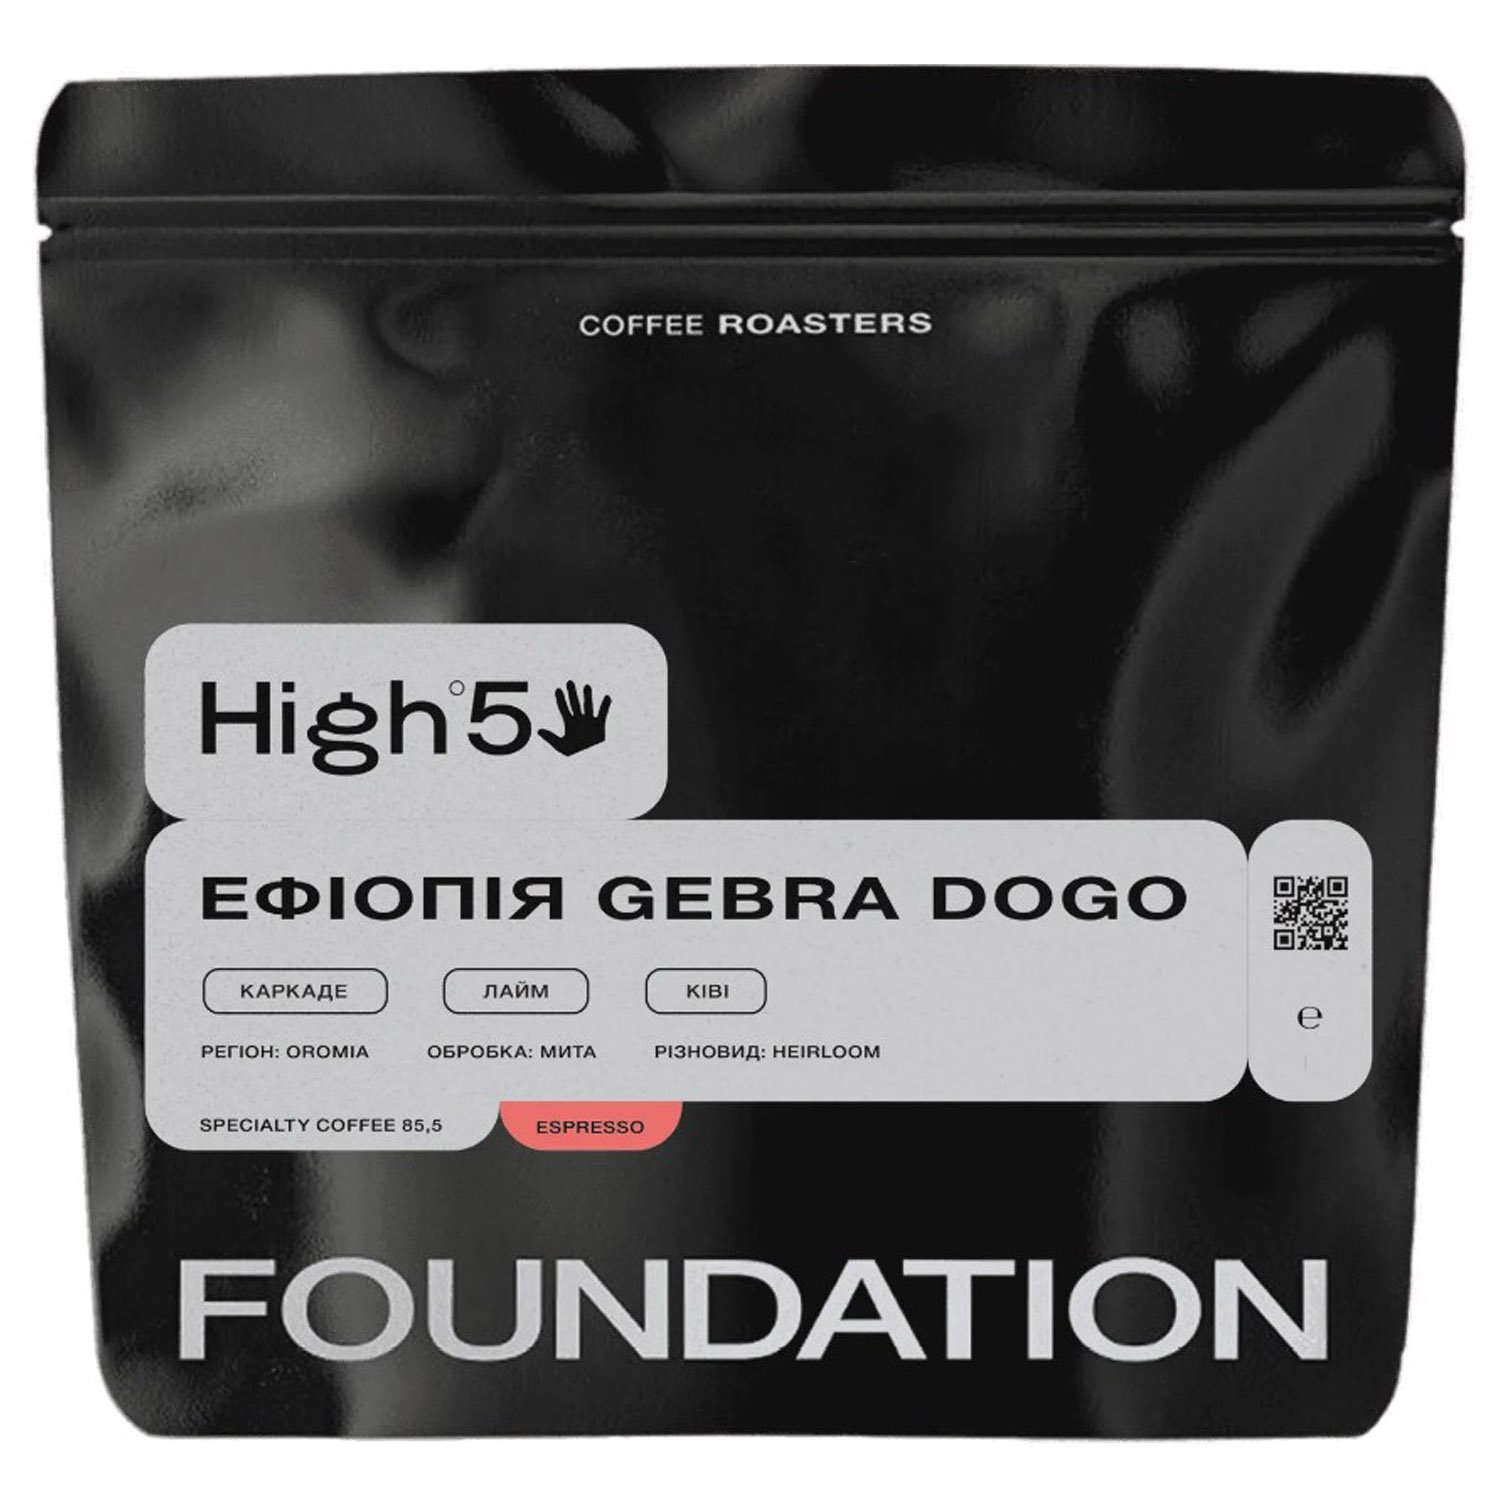 Кофе Foundation High5 Эфиопия Gebra Dogo, 1 кг - фото 1